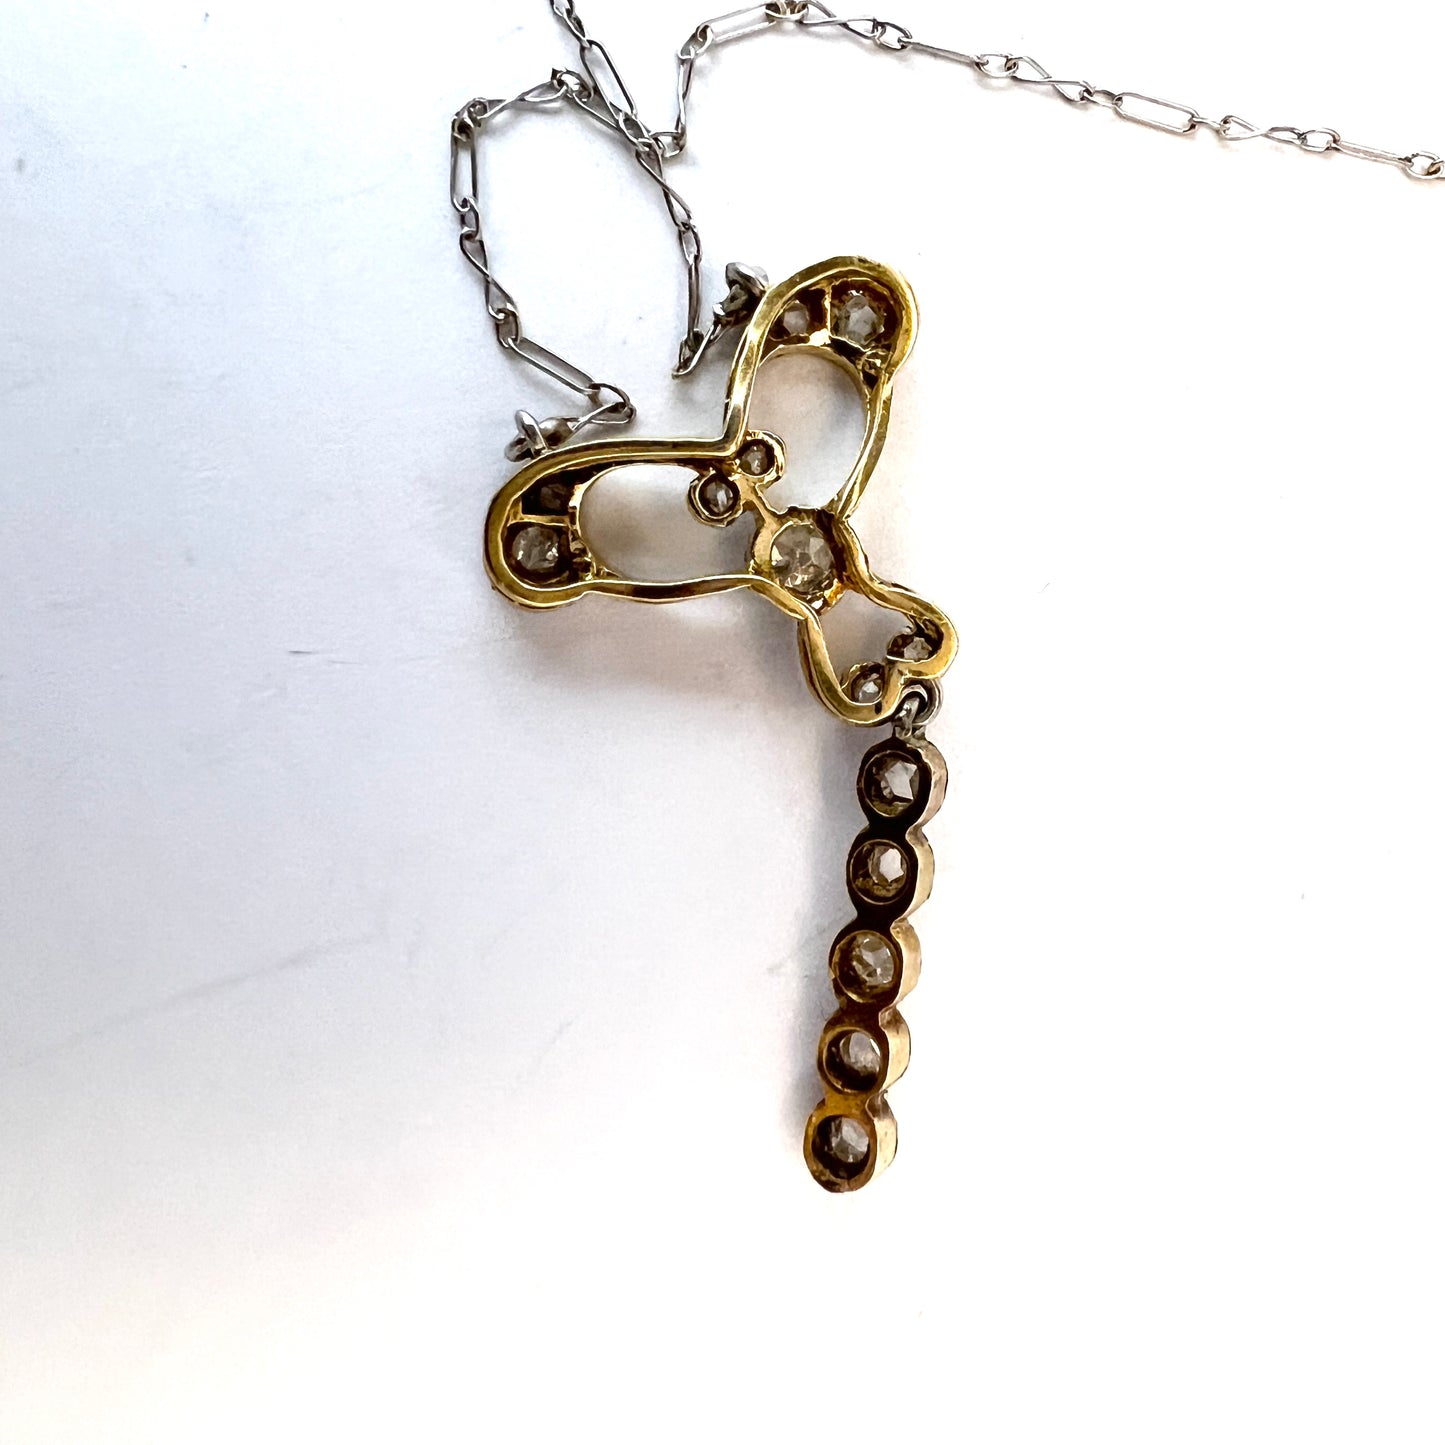 France c 1900. Belle Époque Platinum 18k Gold Diamond Pendant Necklace.